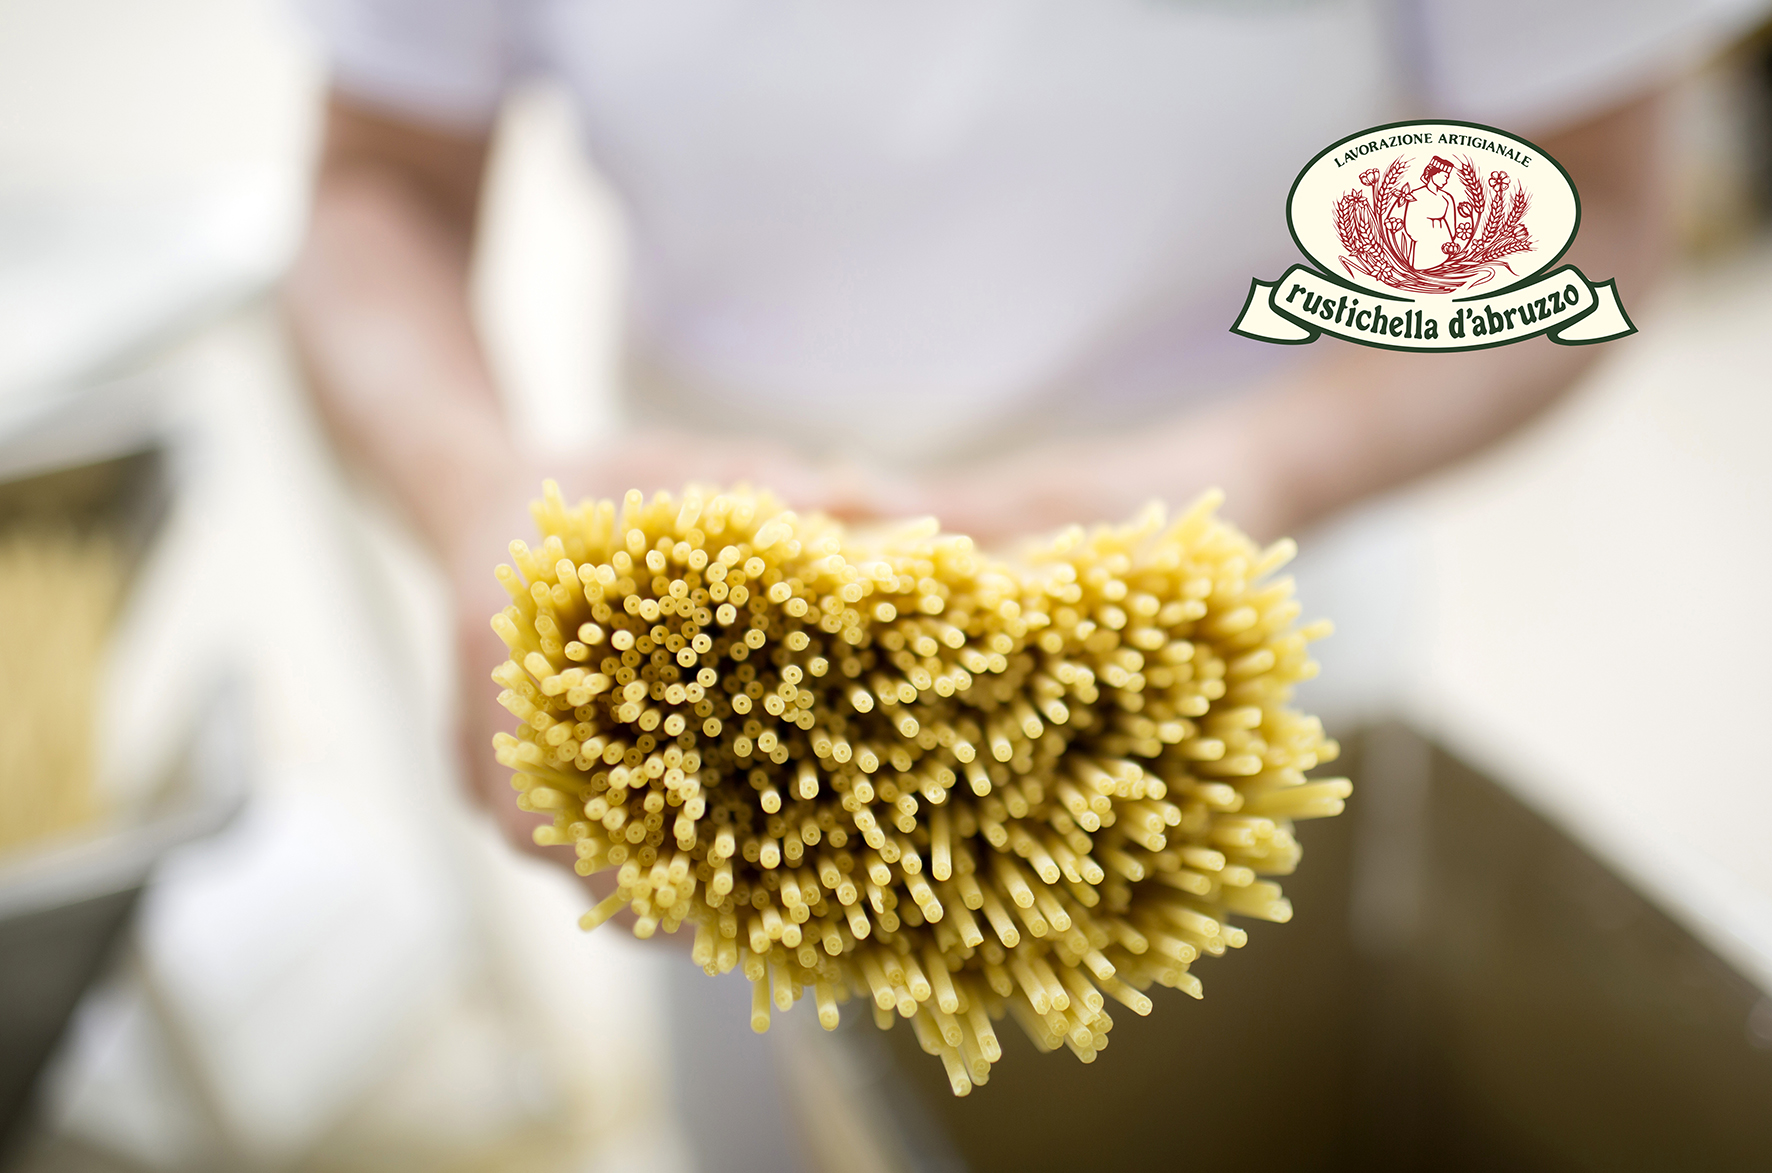 Les pâtes artisanales Rustichella d'Abruzzo sont à retrouver dans l'épicerie fine italienne ou en ligne chez "Les Bonnes Pâtes"